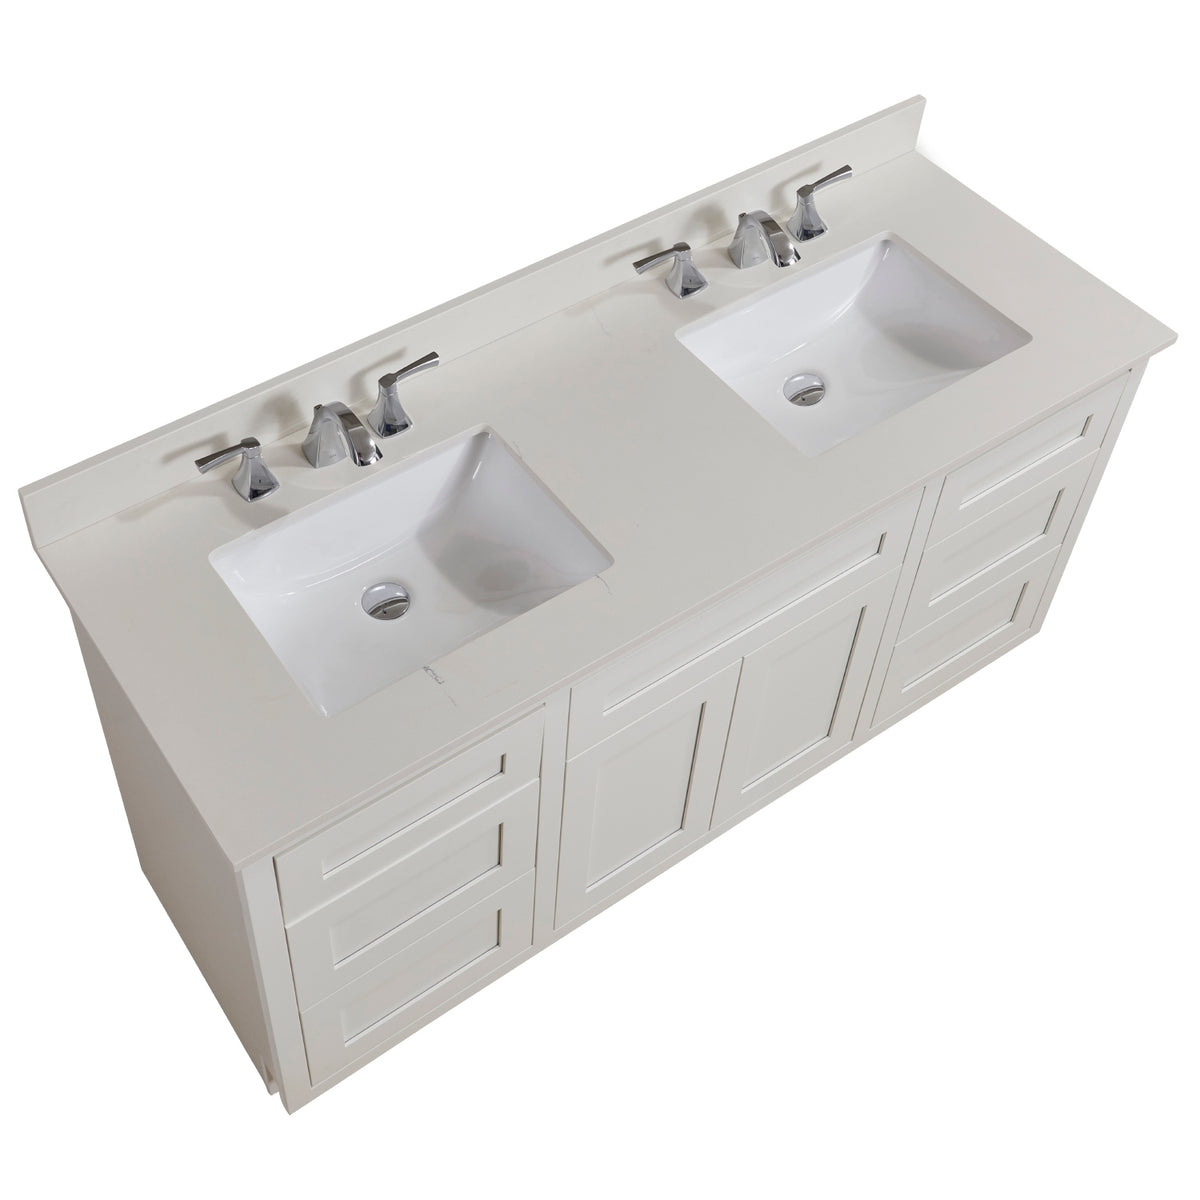 Mueble de baño sin lavabos Toscana en acabado color blanco, 80cm(alto)  120cm(ancho) 47cm(